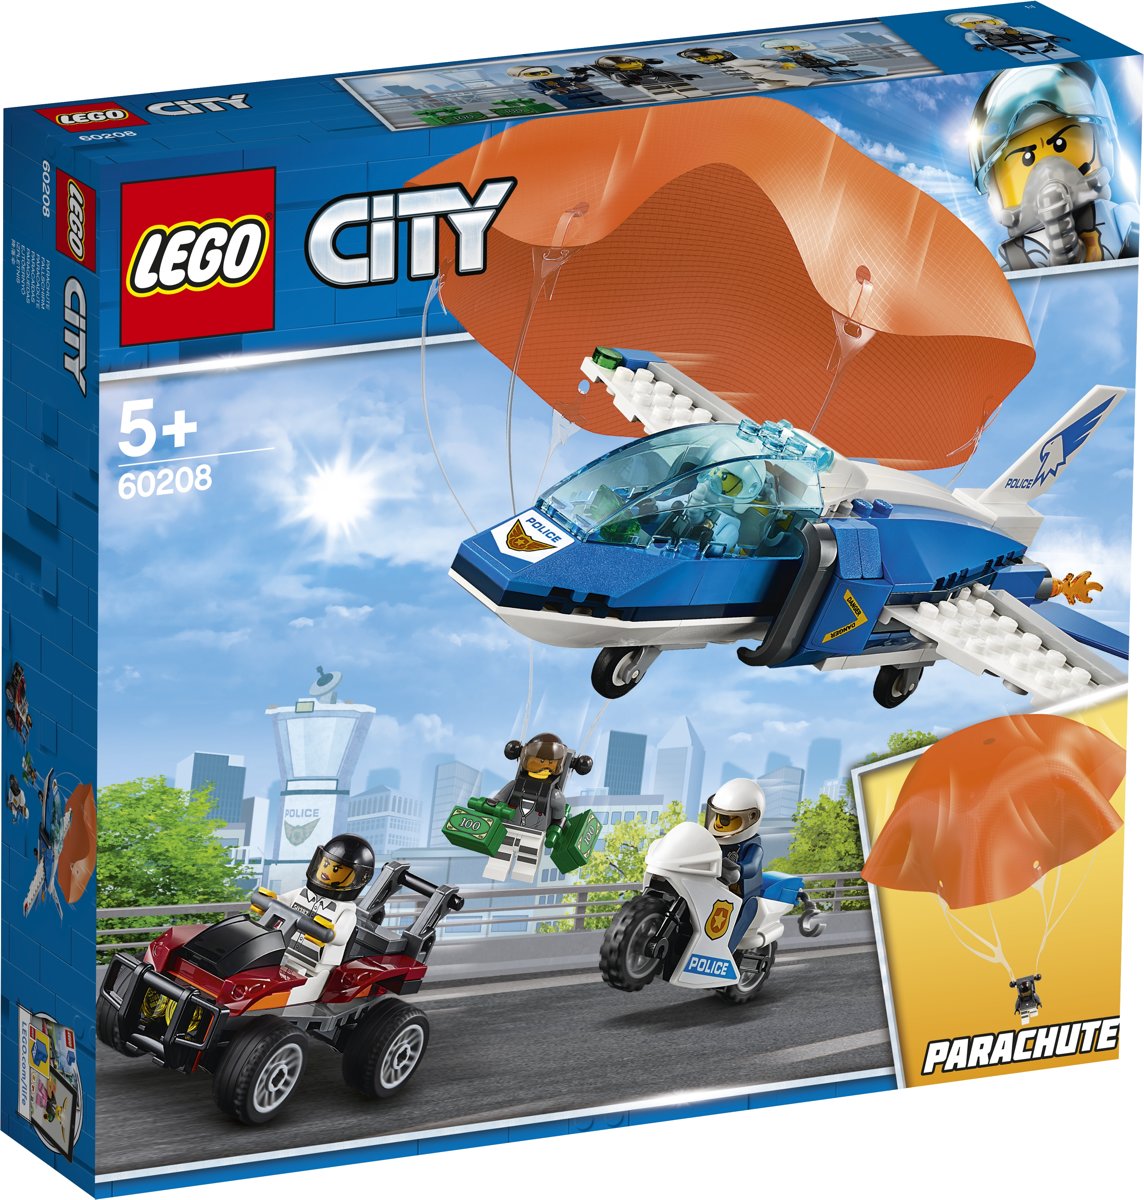 LEGO City Luchtpolitie Parachute-arrestatie - 60208